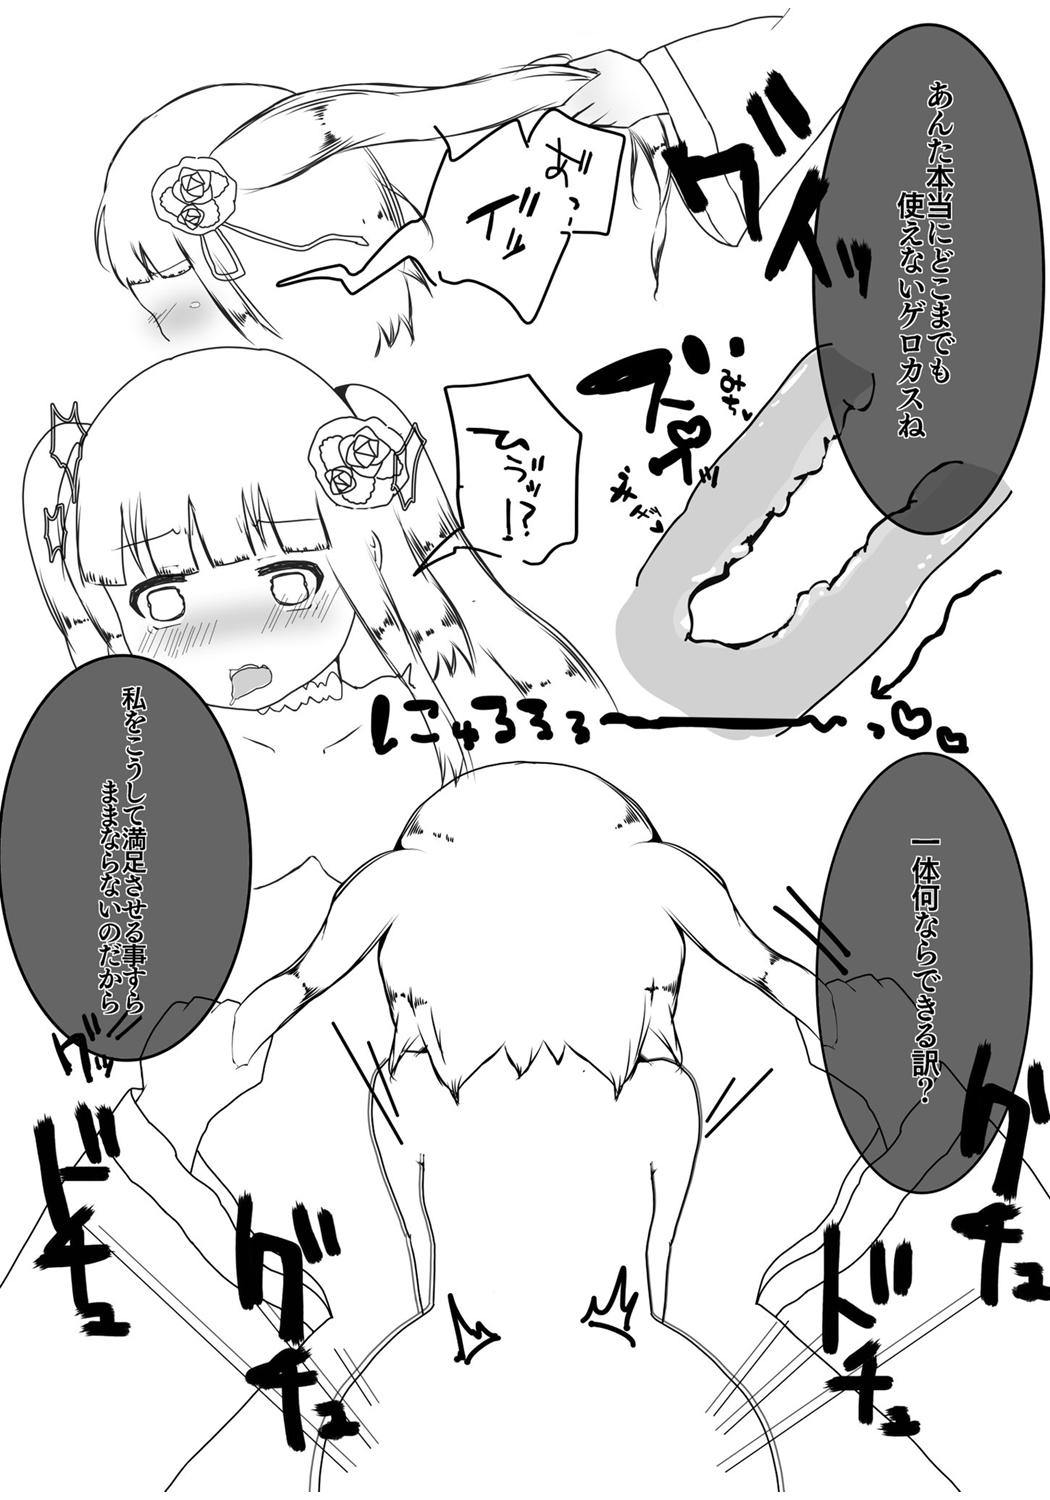 Bear Waga Aruji no Daiji na Tokoro ni Nani ka Haeten desu kedo!!? - Umineko no naku koro ni | when the seagulls cry Hardcore Porno - Page 6